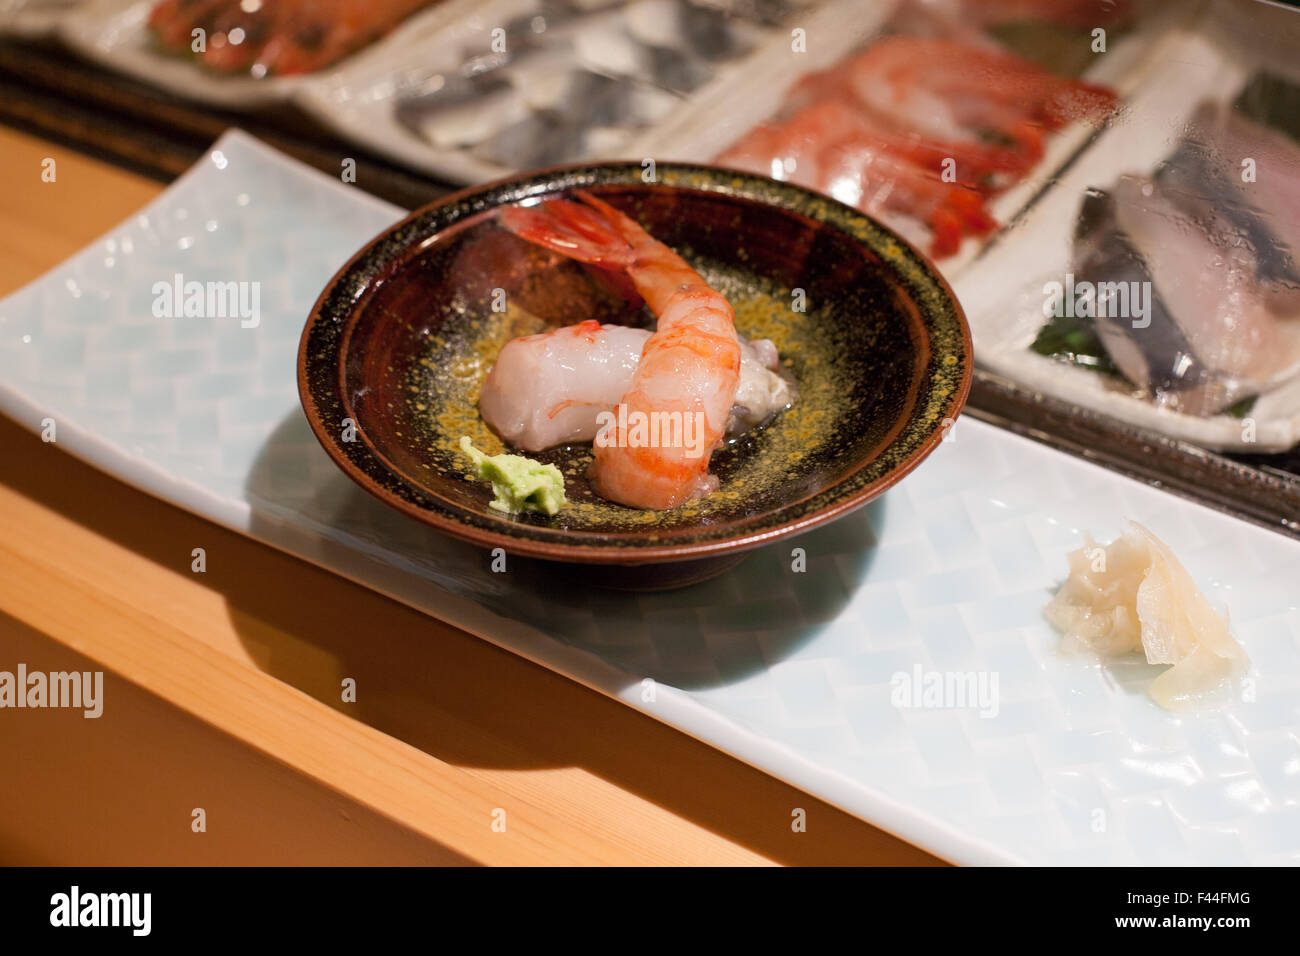 Ebi gamberi sushi sashimi wasabi e zenzero su una piastra Foto Stock